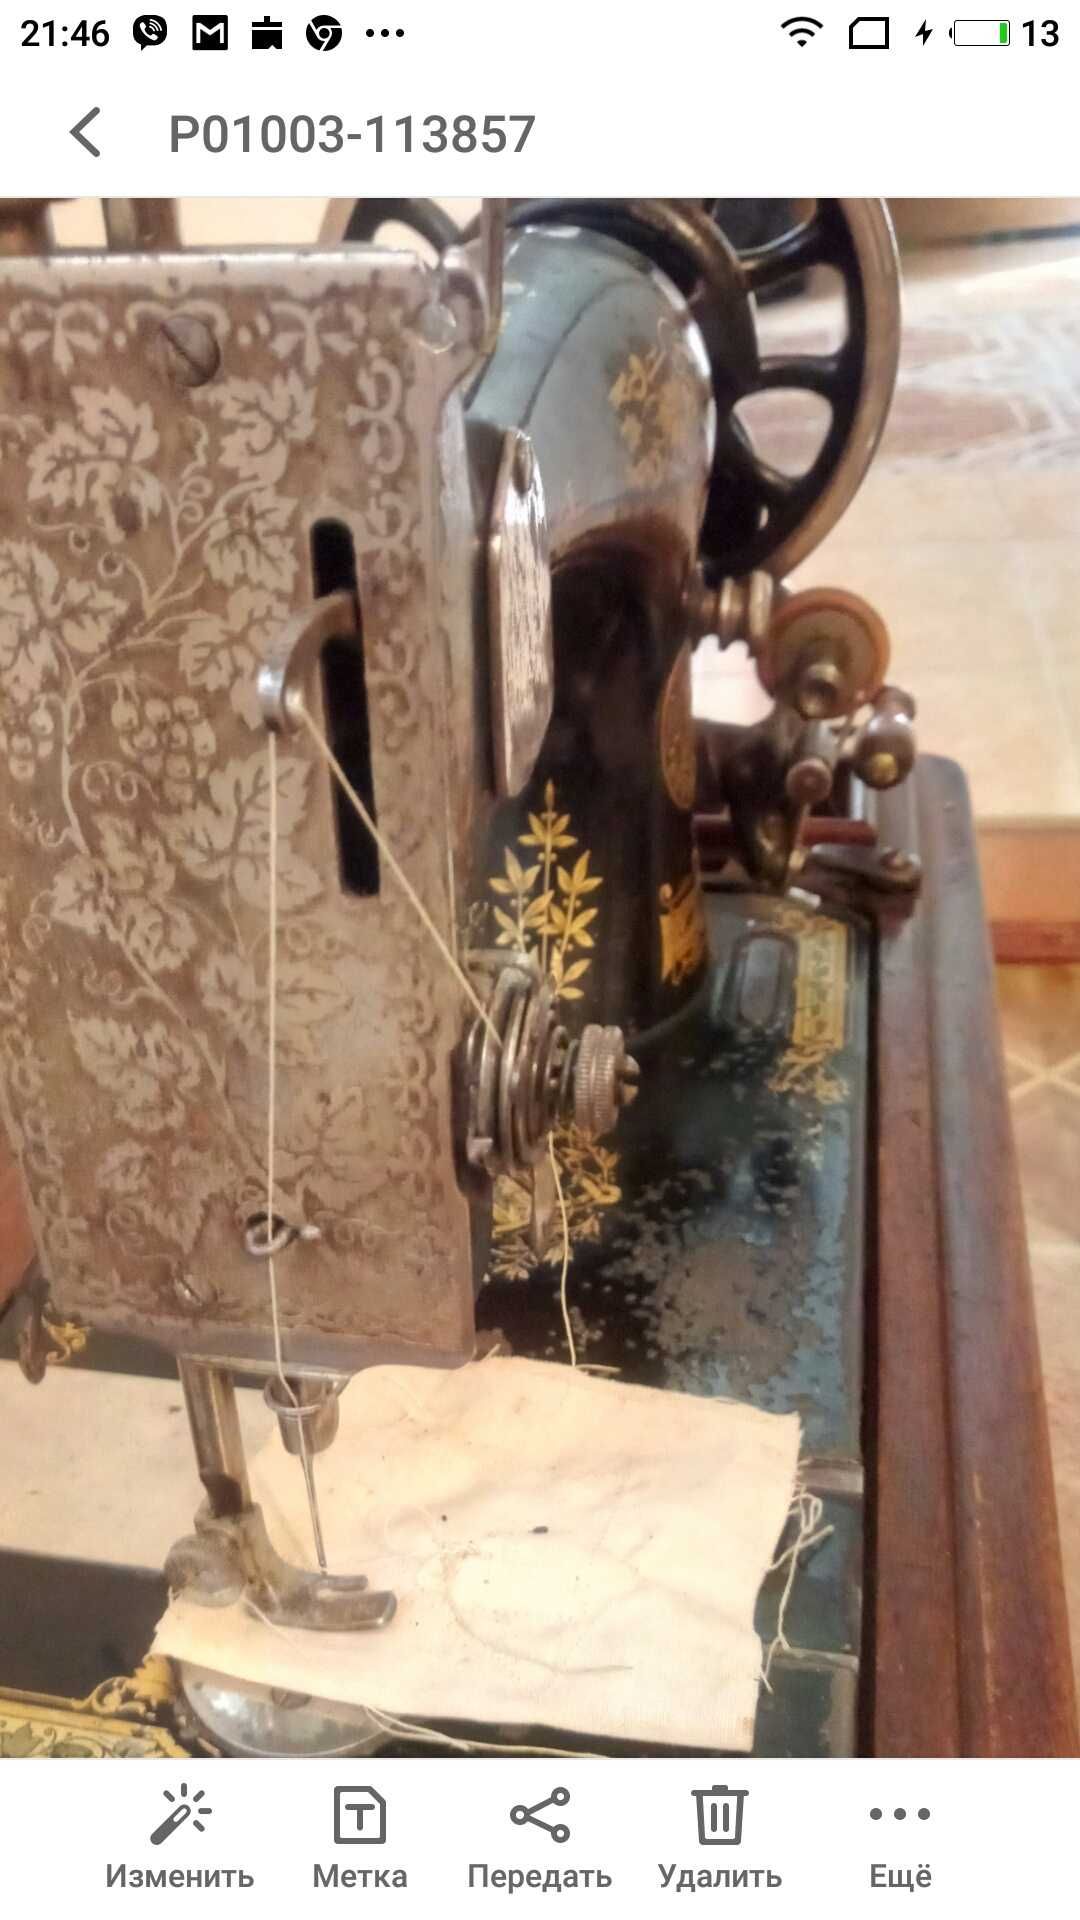 швейная машина сингер с тумбочкой отл сост срочно торг